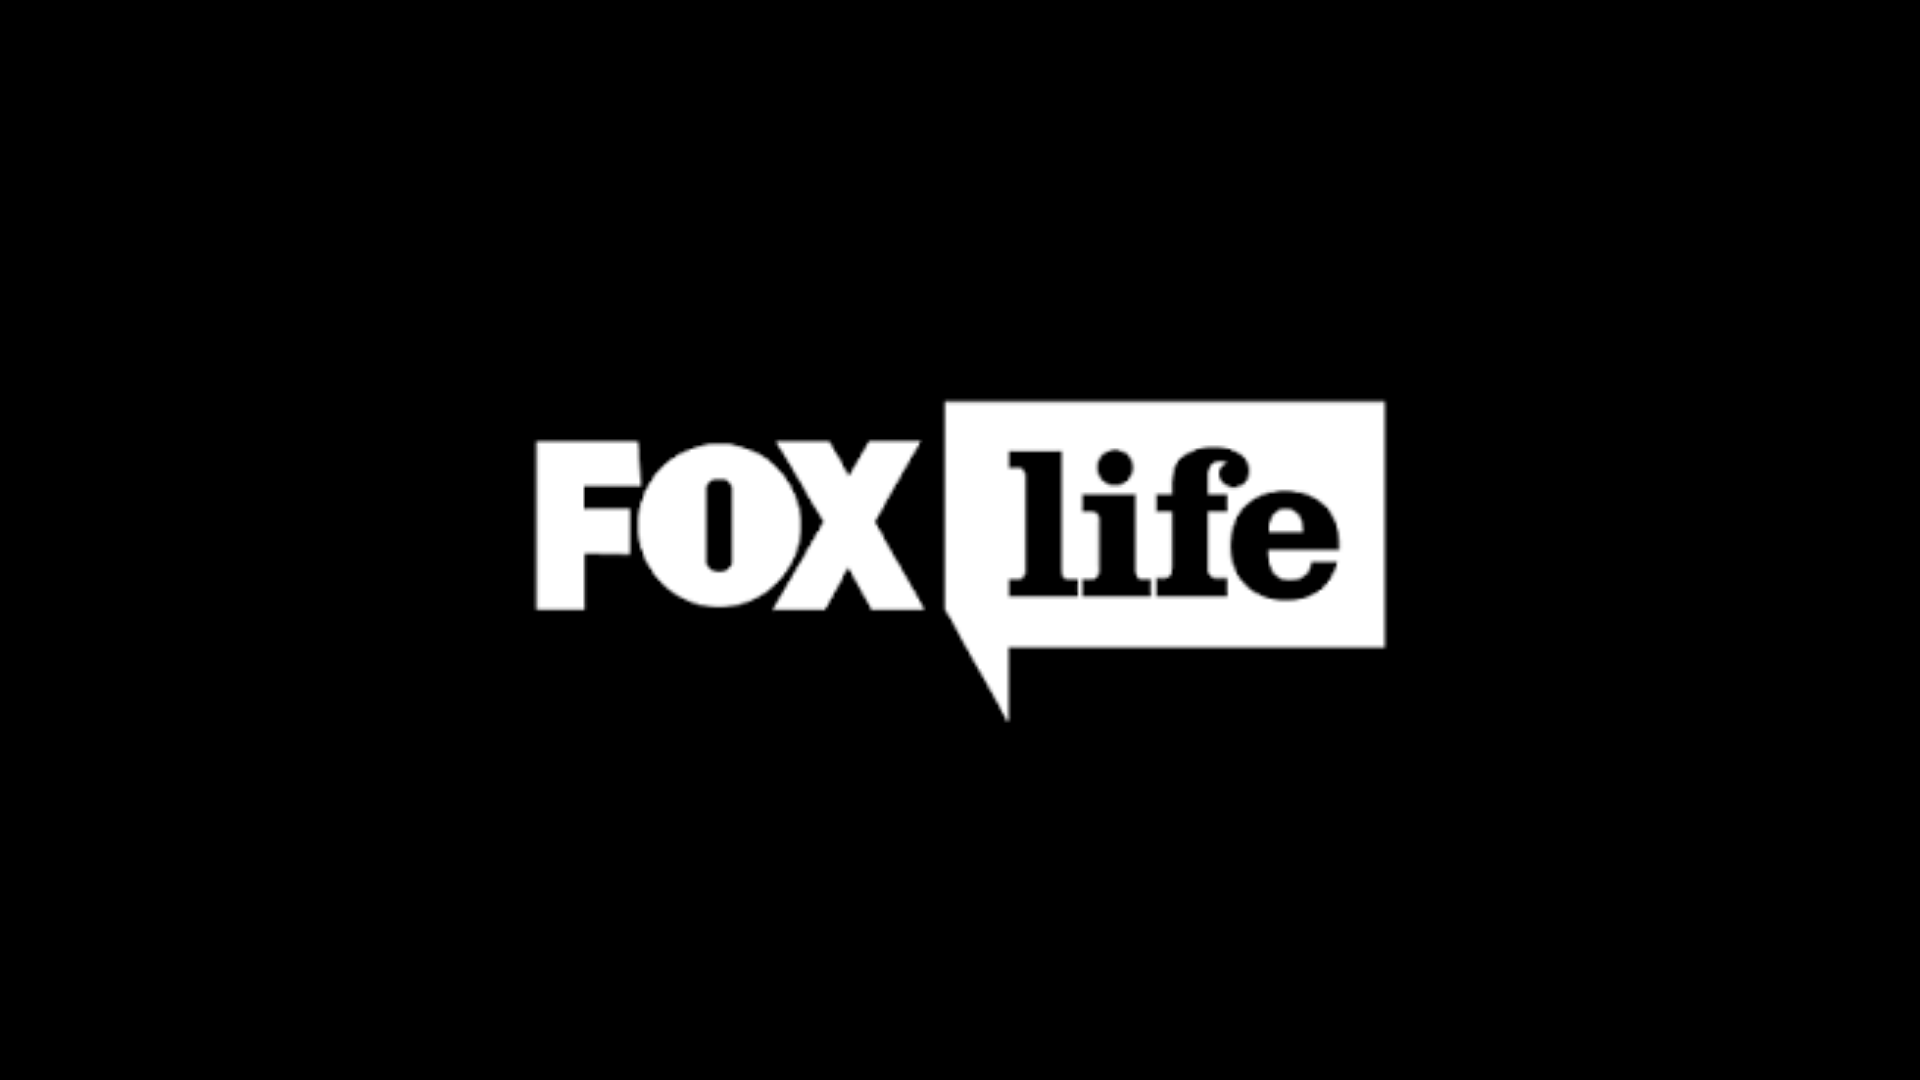 Fox Life ao vivo,Fox Life online,assistir Fox Life,assistir Fox Life ao vivo,assistir Fox Life online,Fox Life gratis,assistir Fox Life gratis,ao vivo online,ao vivo gratis,ver Fox Life,ver Fox Life ao vivo,ver Fox Life online,24 horas,24h,multicanais,piratetv,piratatvs.com